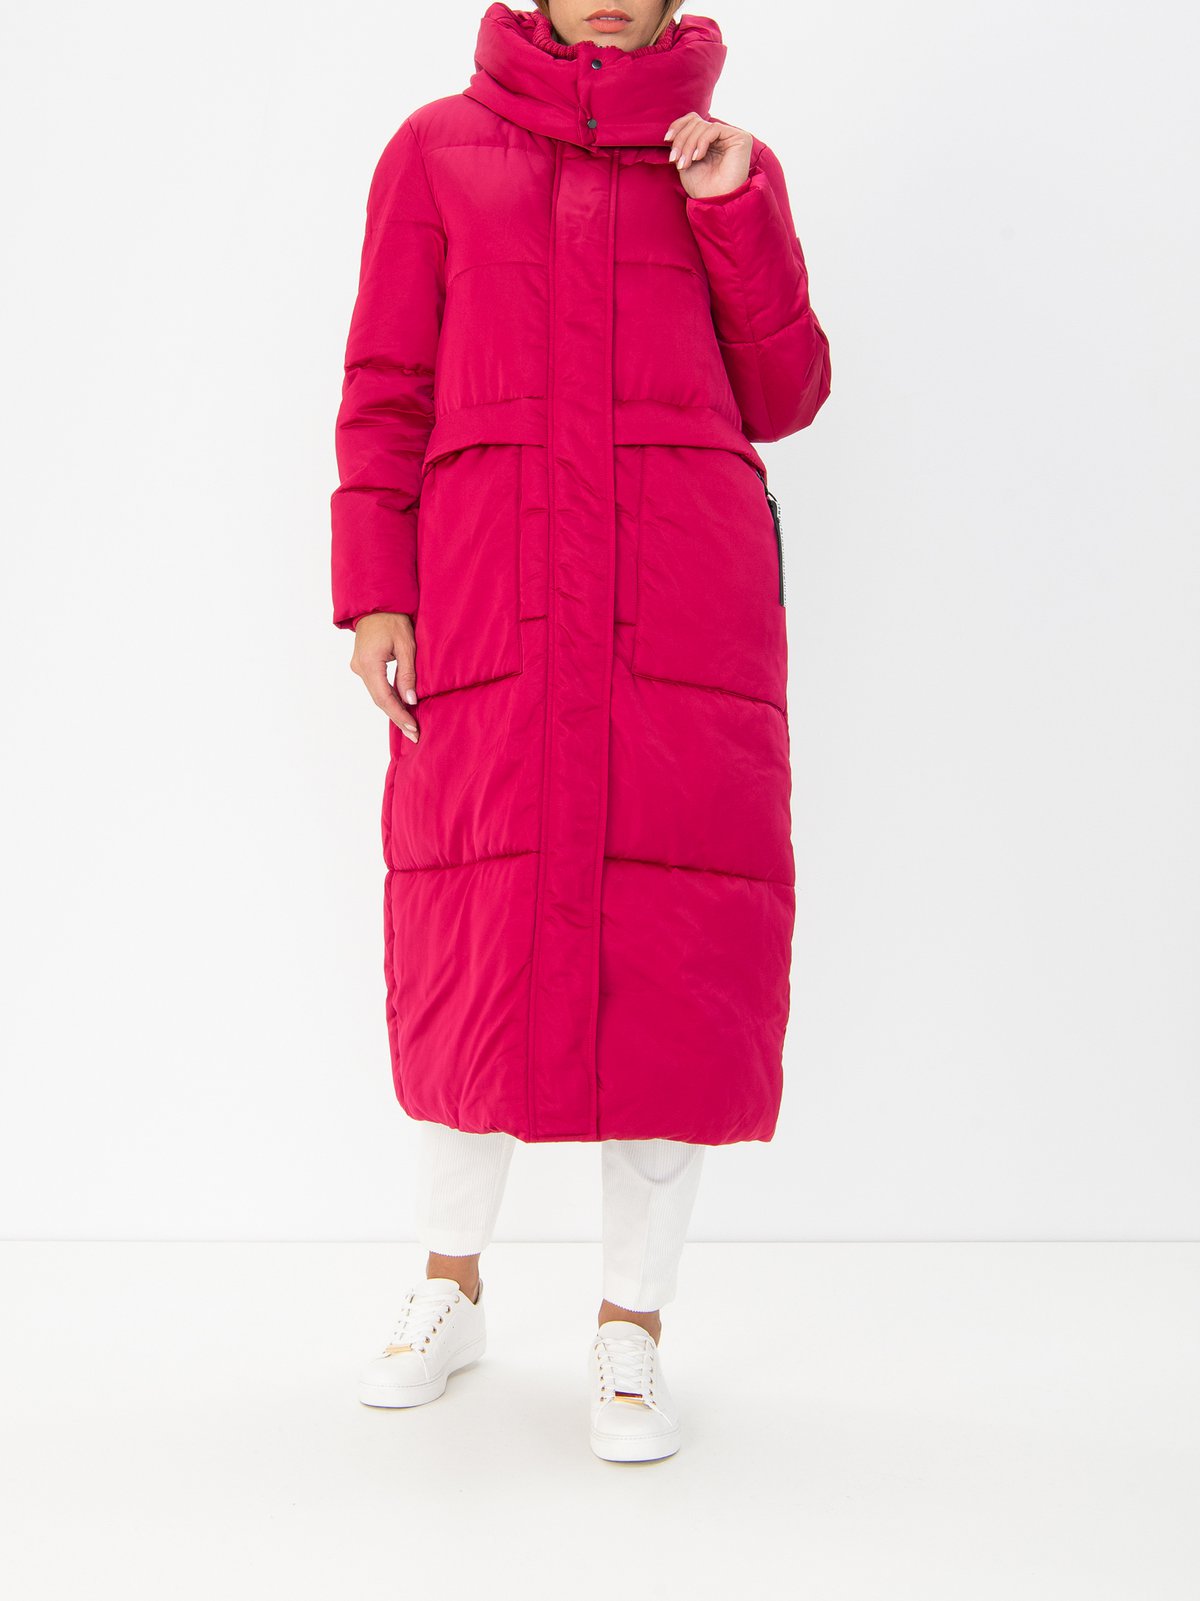 Women's coat pink Tom Tailor